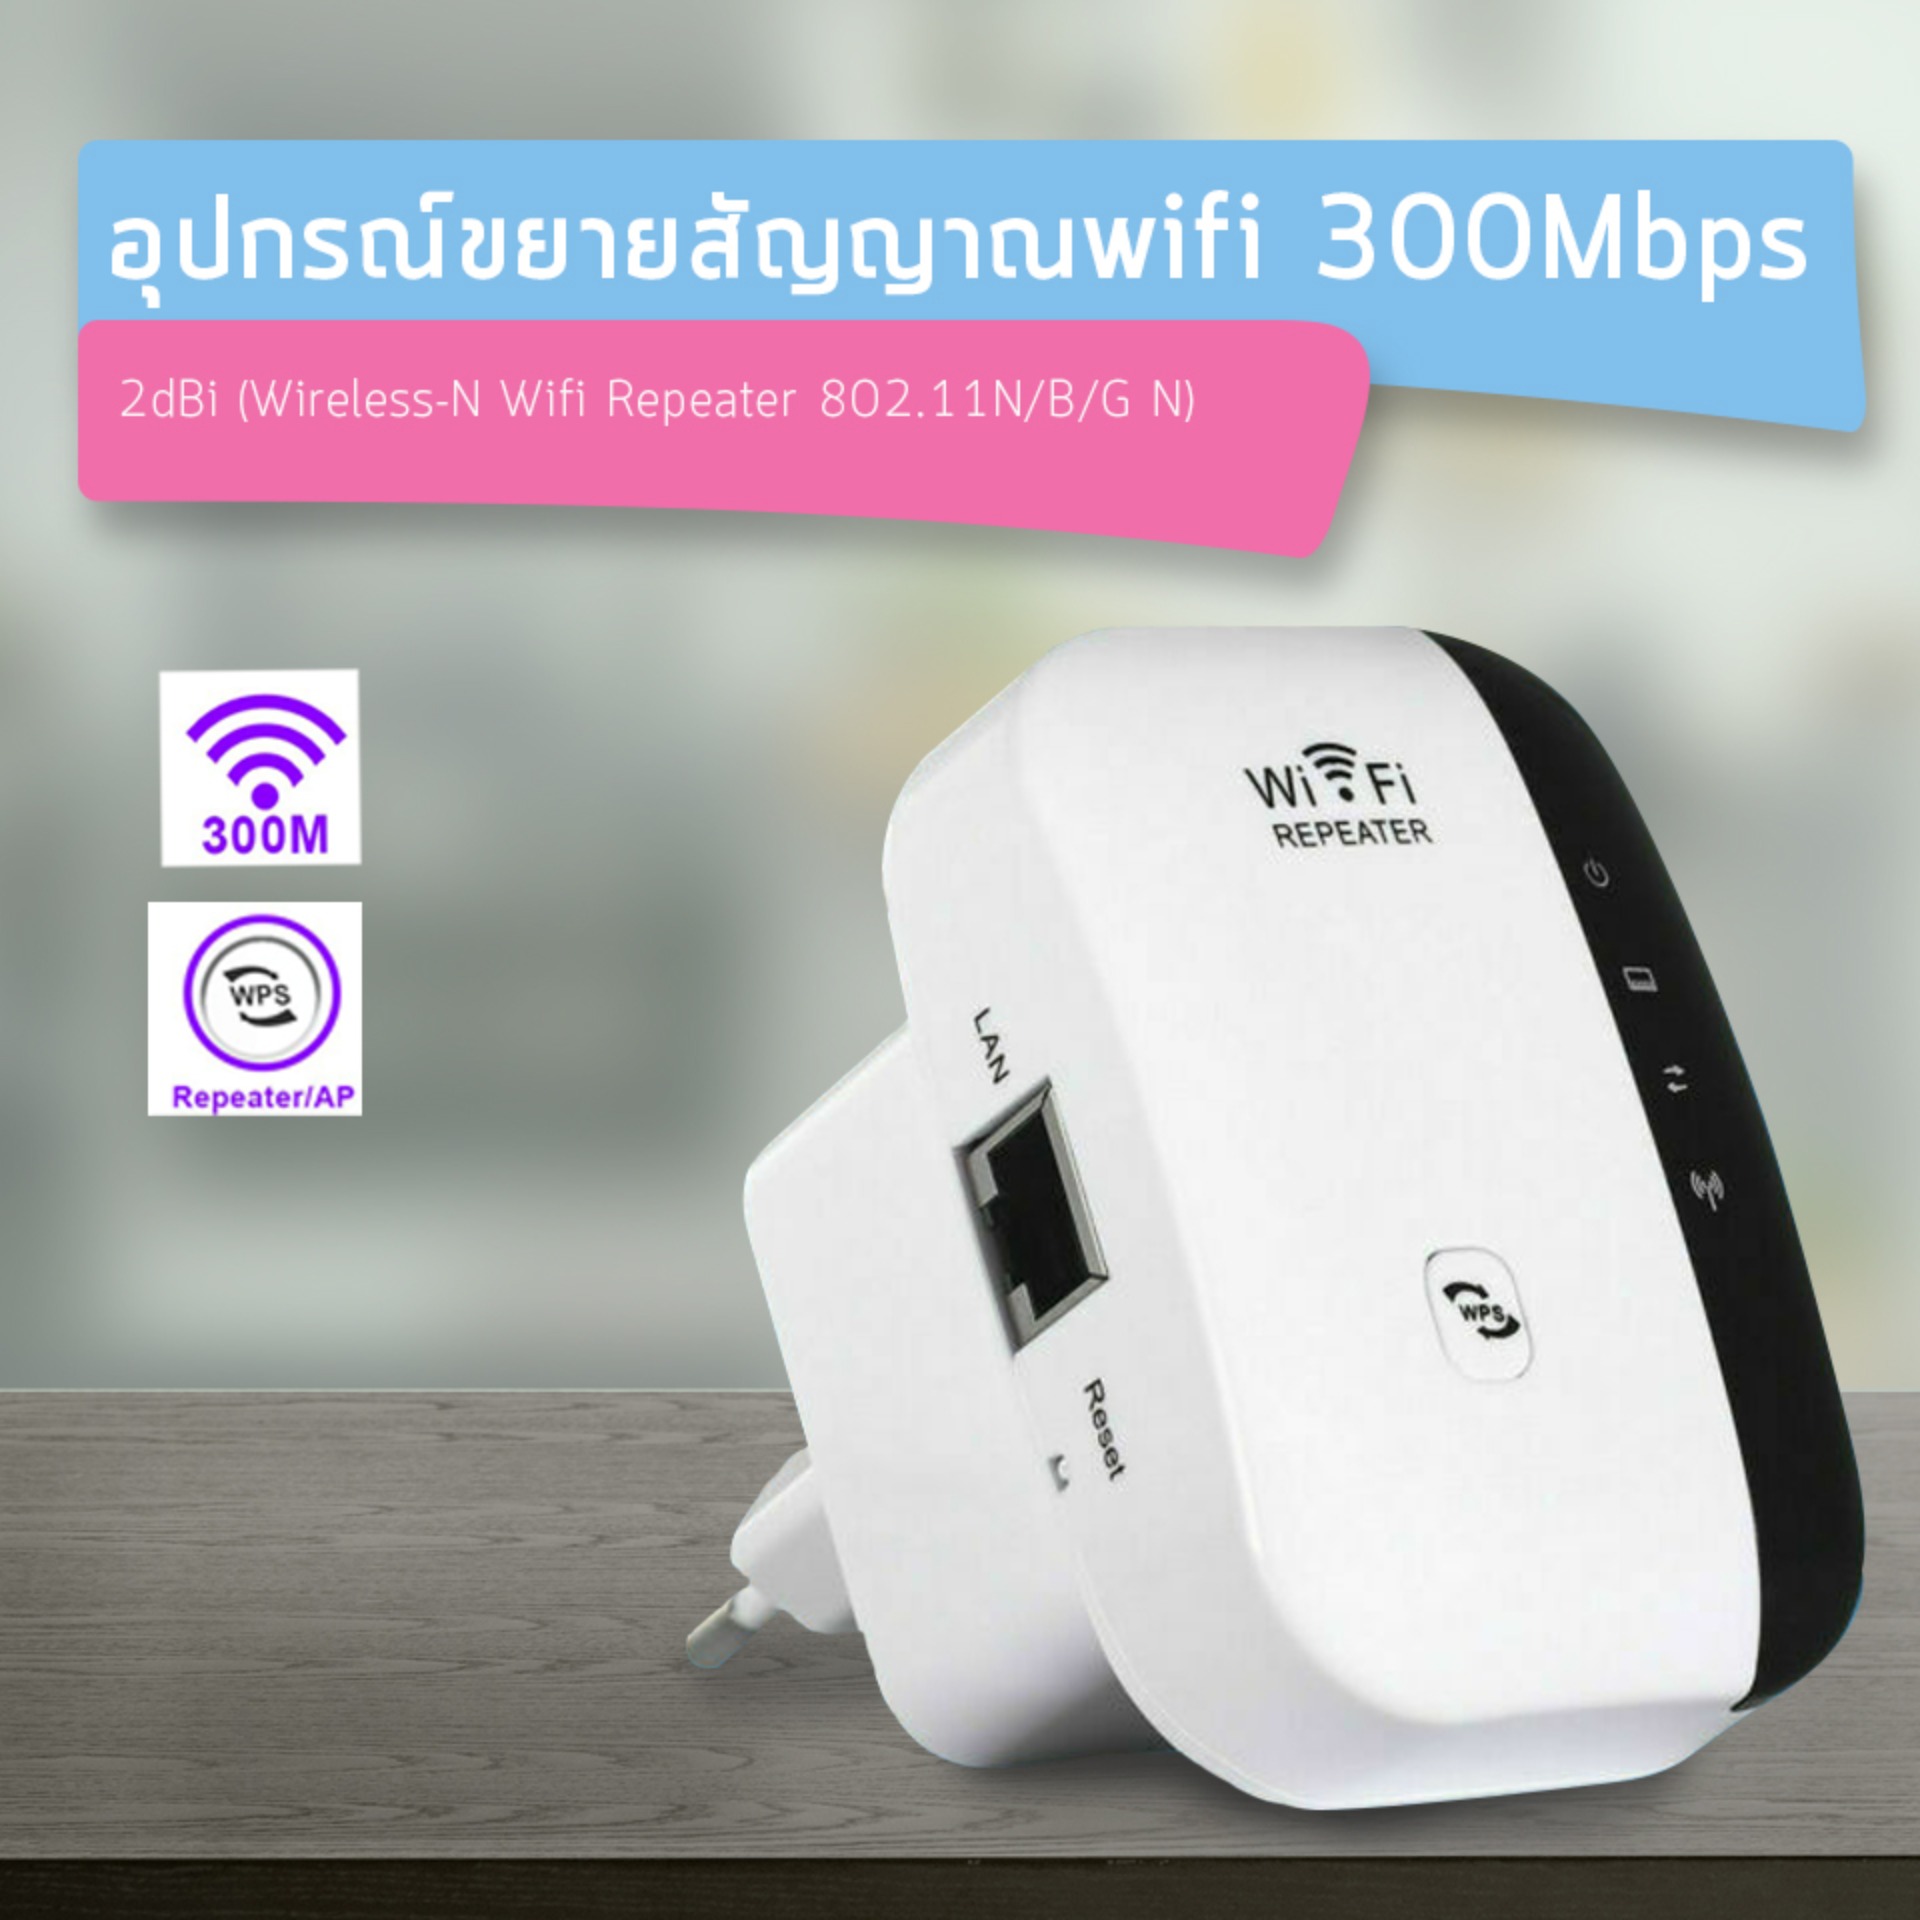 ดูดสัญญาณ WiFi ง่ายๆ แค่เสียบปลั๊ก Best Wireless-N Router 300Mbps Universal WiFi Range Extender Repeater High Speed